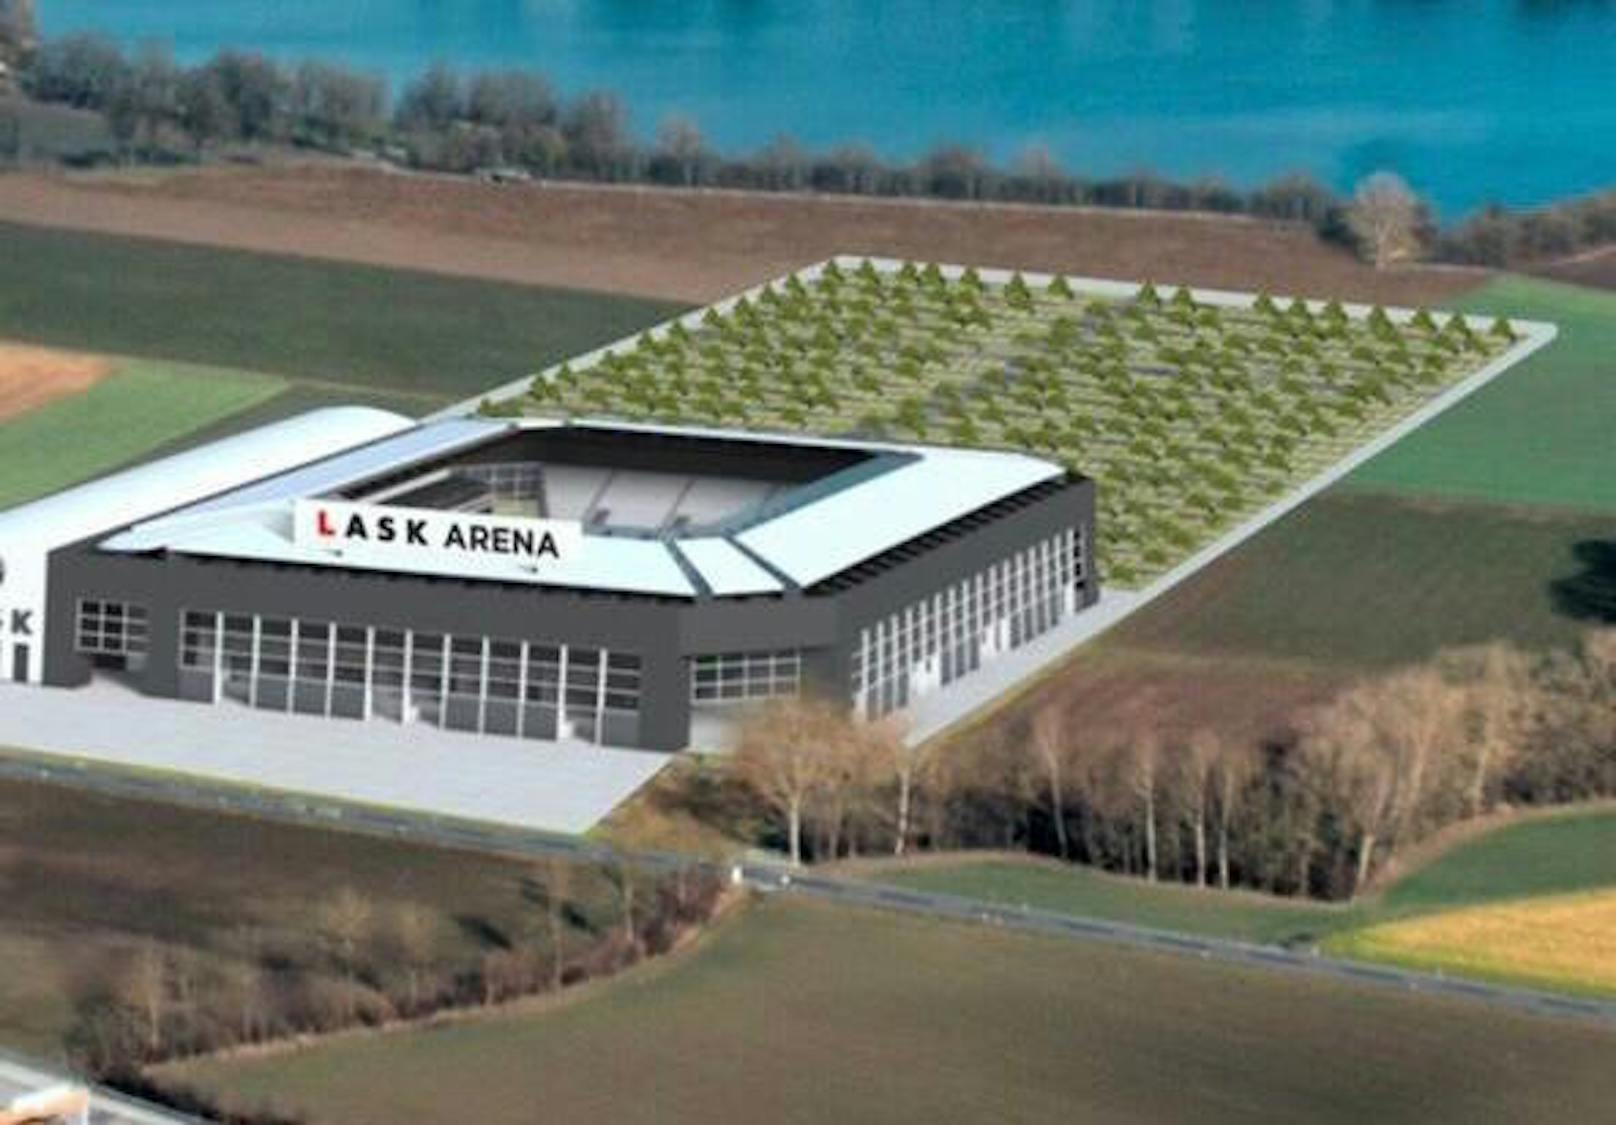 Geht es nach dem LASK, so soll das Stadion in Pichling gebaut werden. (Symbolbild: LASK)